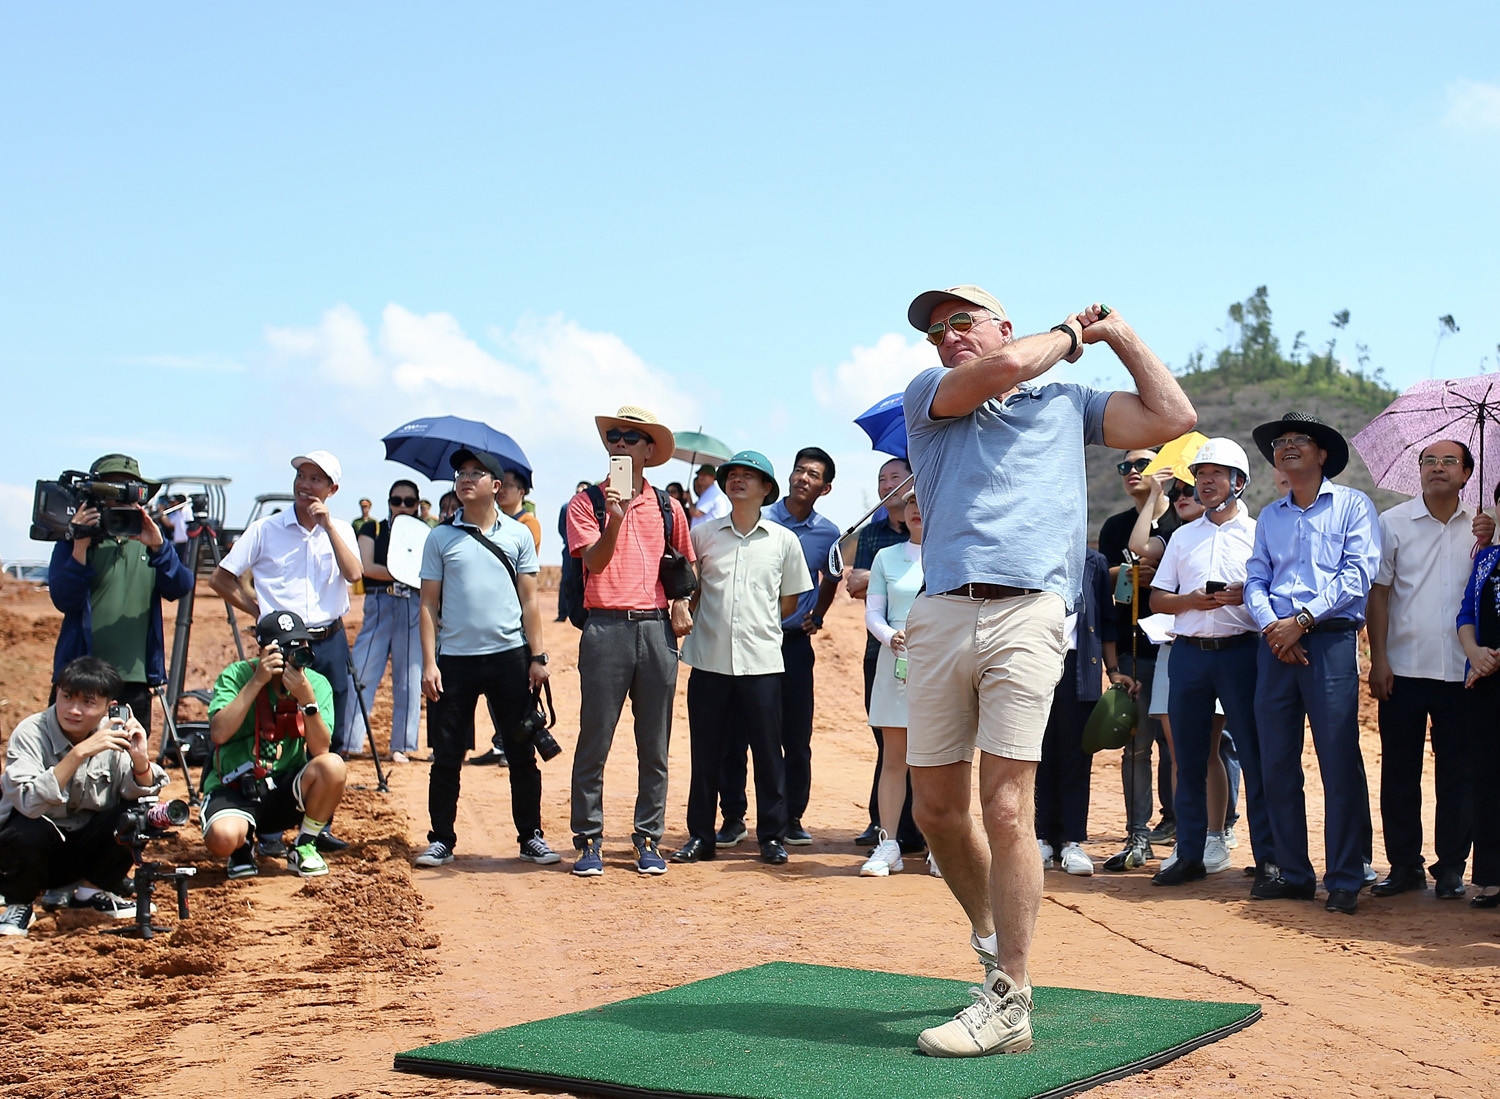 Huyền thoại golf thế giới Greg Norman thực hiện cú swing đầu tiên tại án sân golf Văn Lang Empire